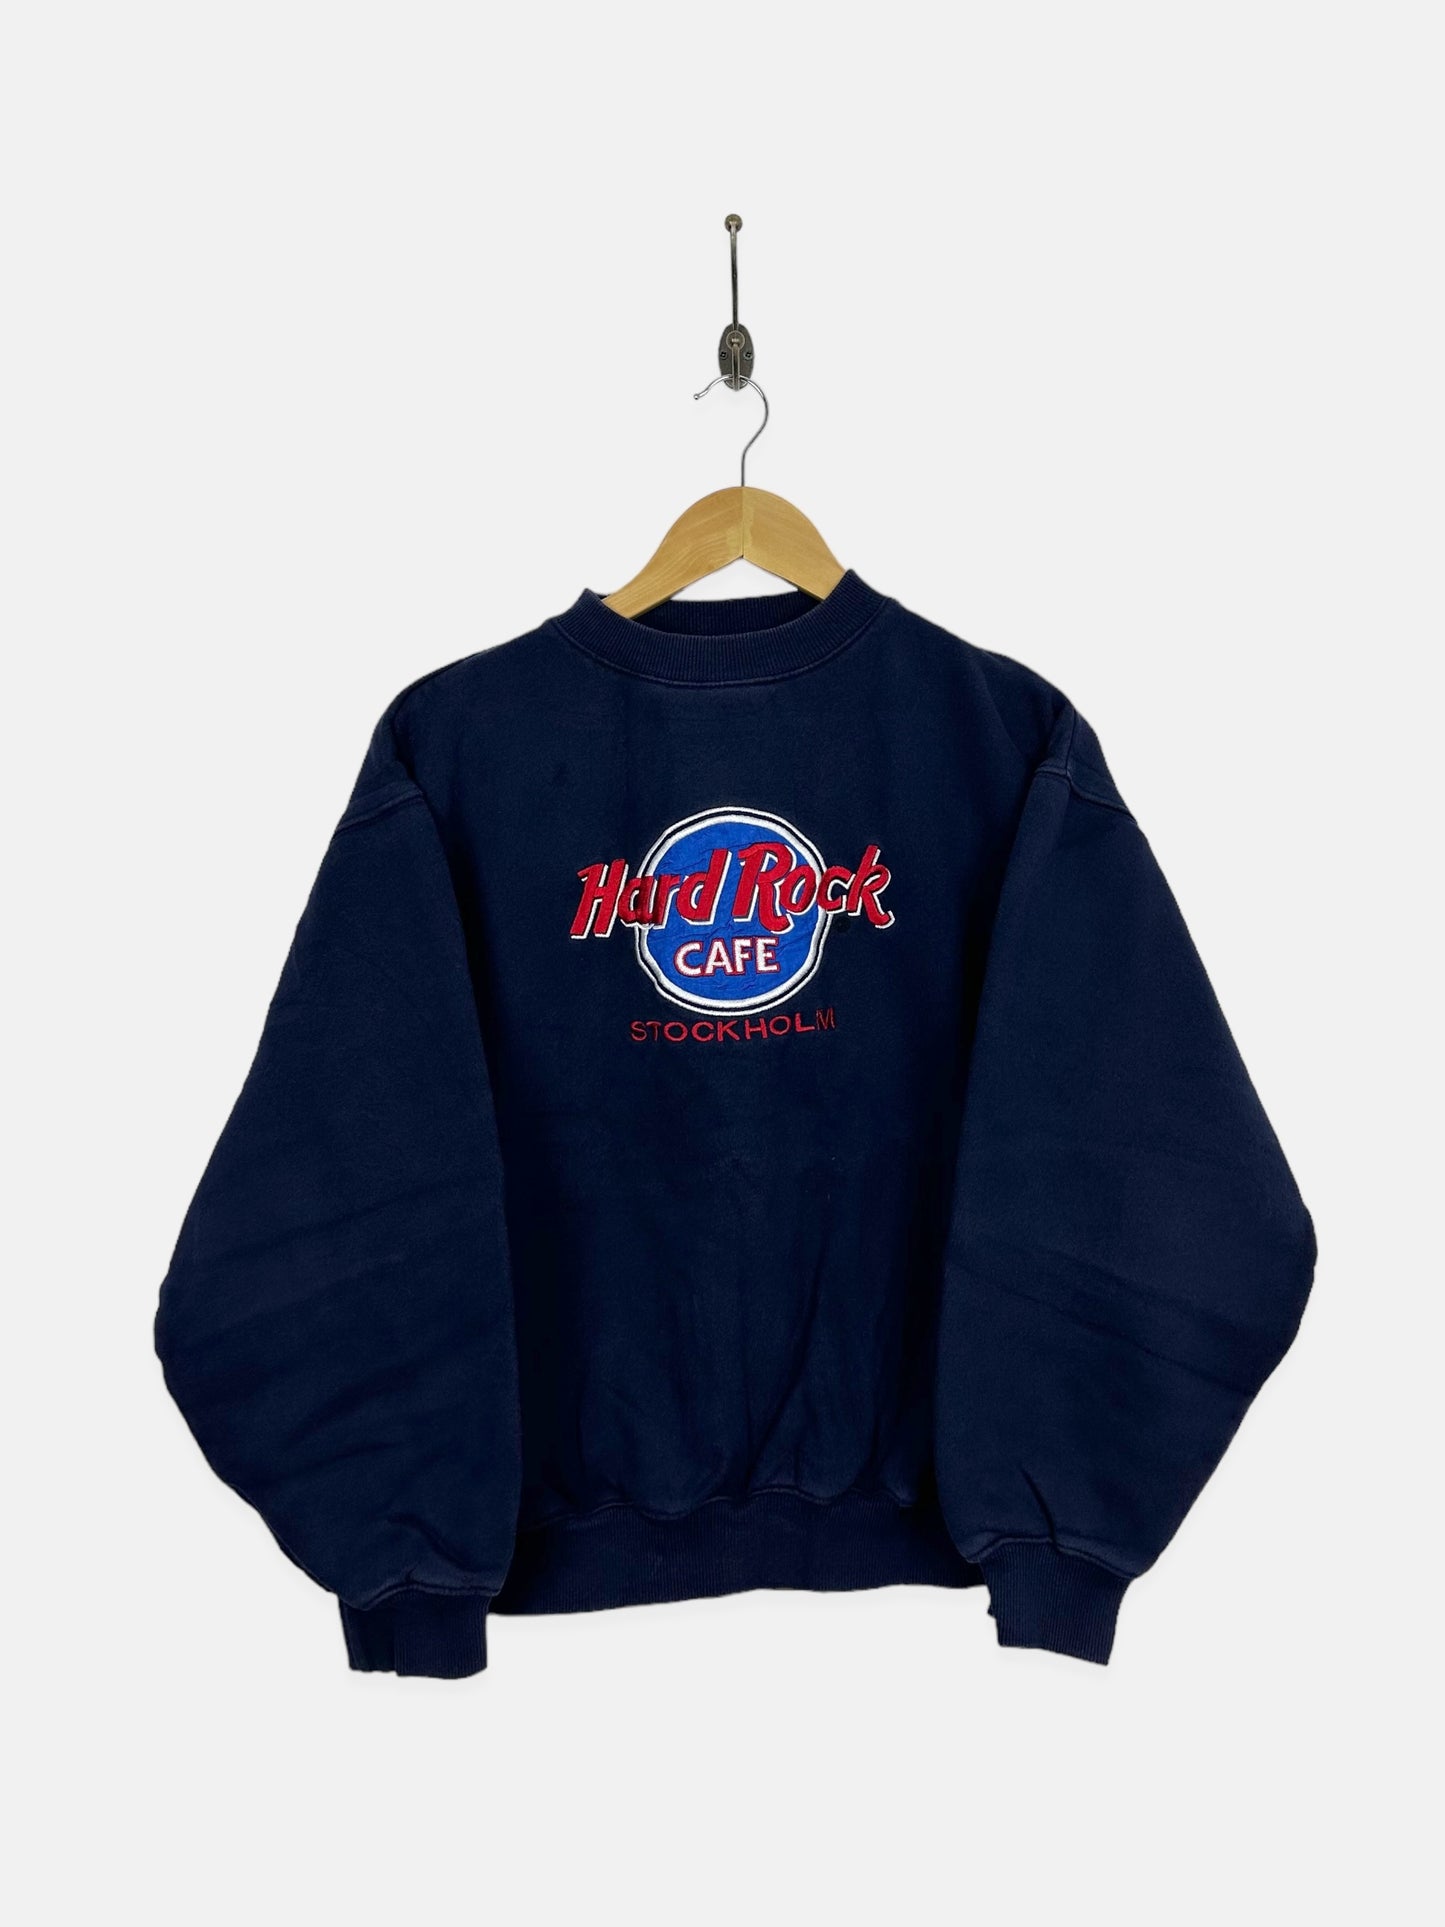 90's Hard Rock Cafe Stockholm Embroidered Vintage Sweatshirt Size 6-8